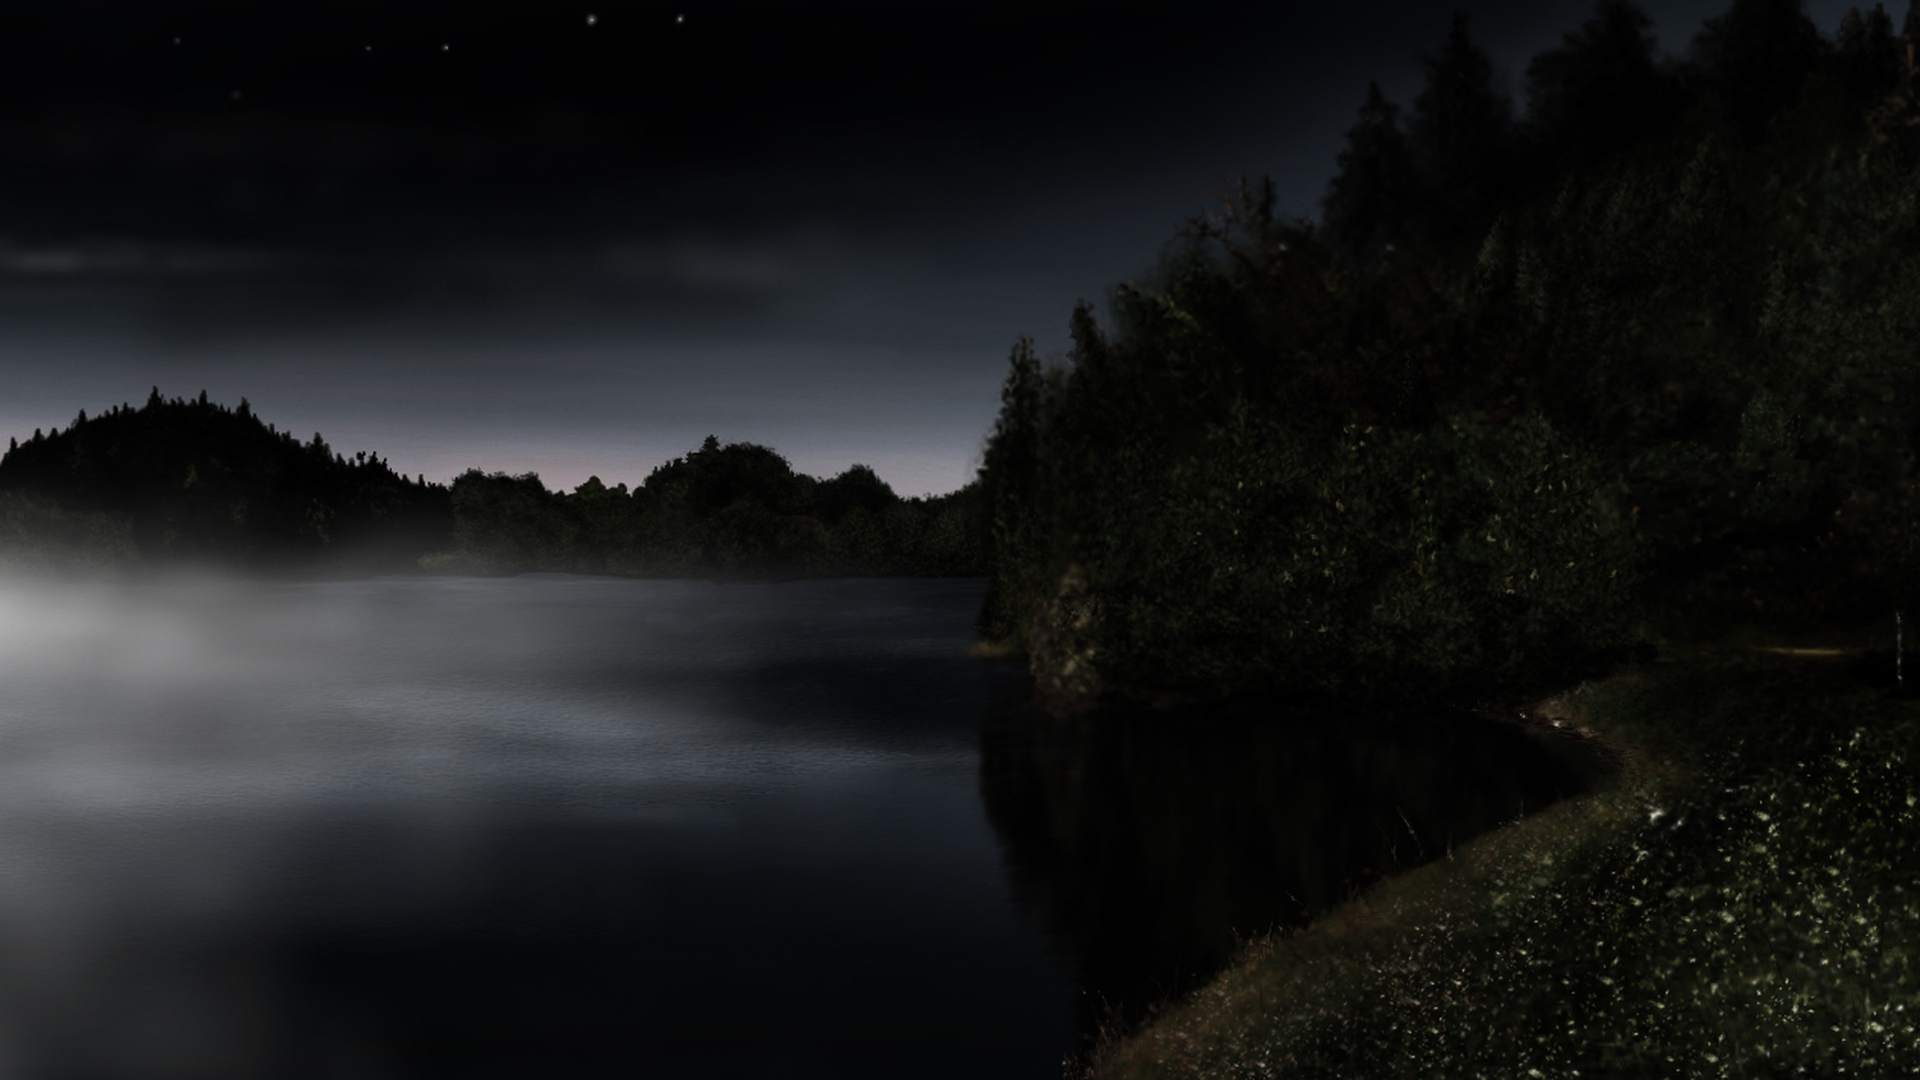 Hasil gambar untuk lake wallpaper dark